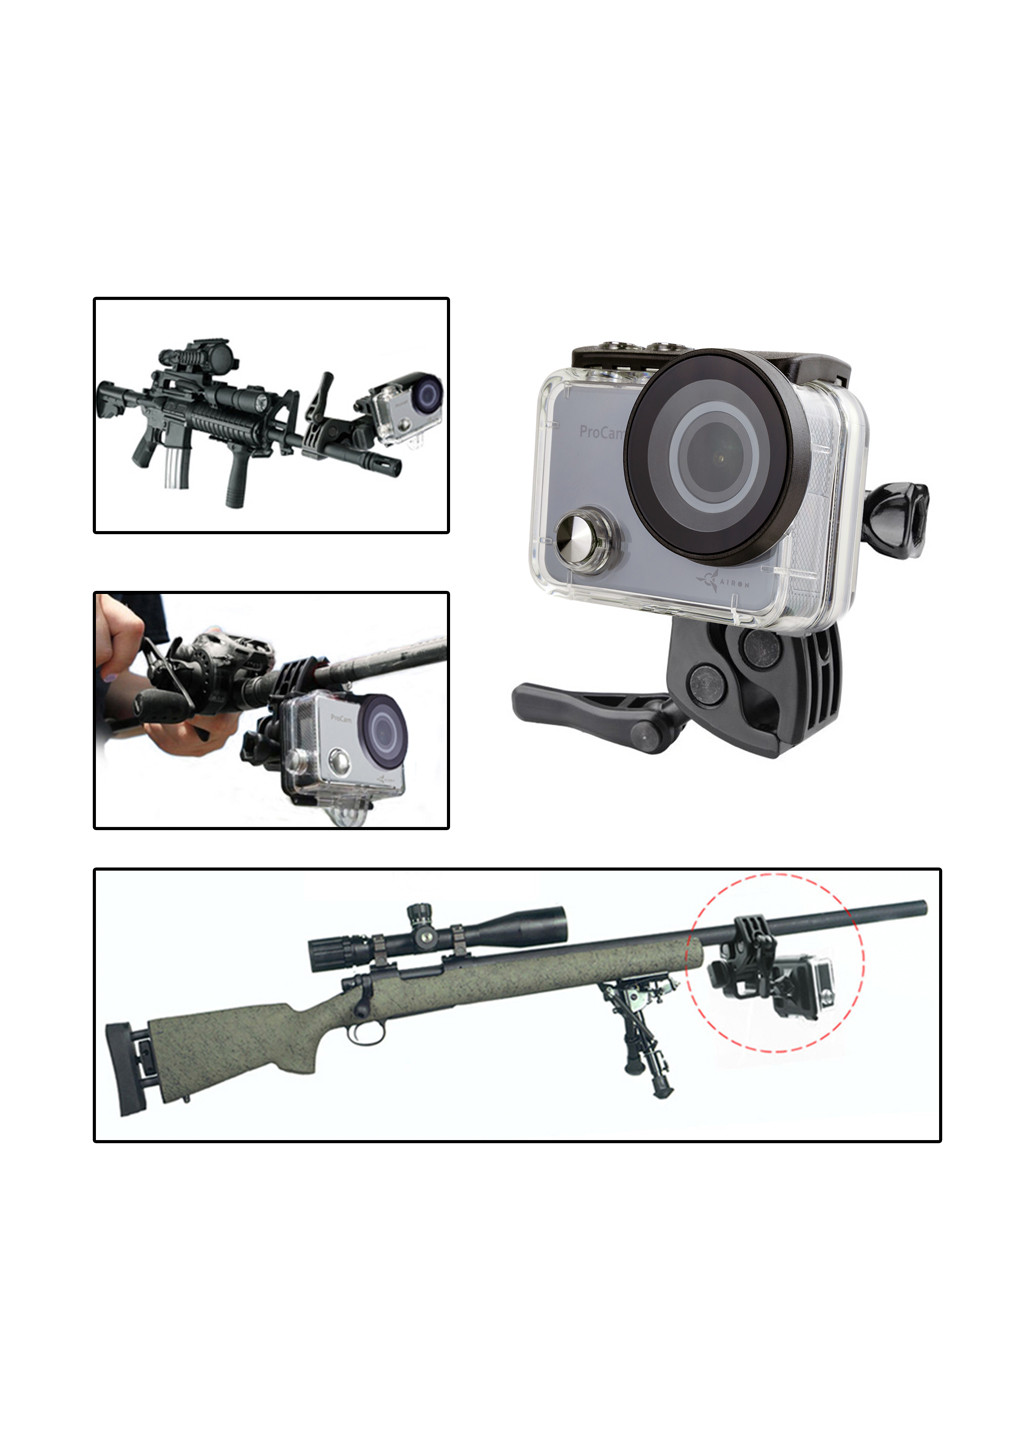 Кріплення для зброї, вудок і луків AC160 для екшн-камер GoPro,, ACME, Xiaomi, SJCam, EKEN, ThiEYE Airon для оружия, удочек и луков ac160 для экшн-камер gopro, airon, acme, xiaomi, sjcam, eken, thieye (162923480)